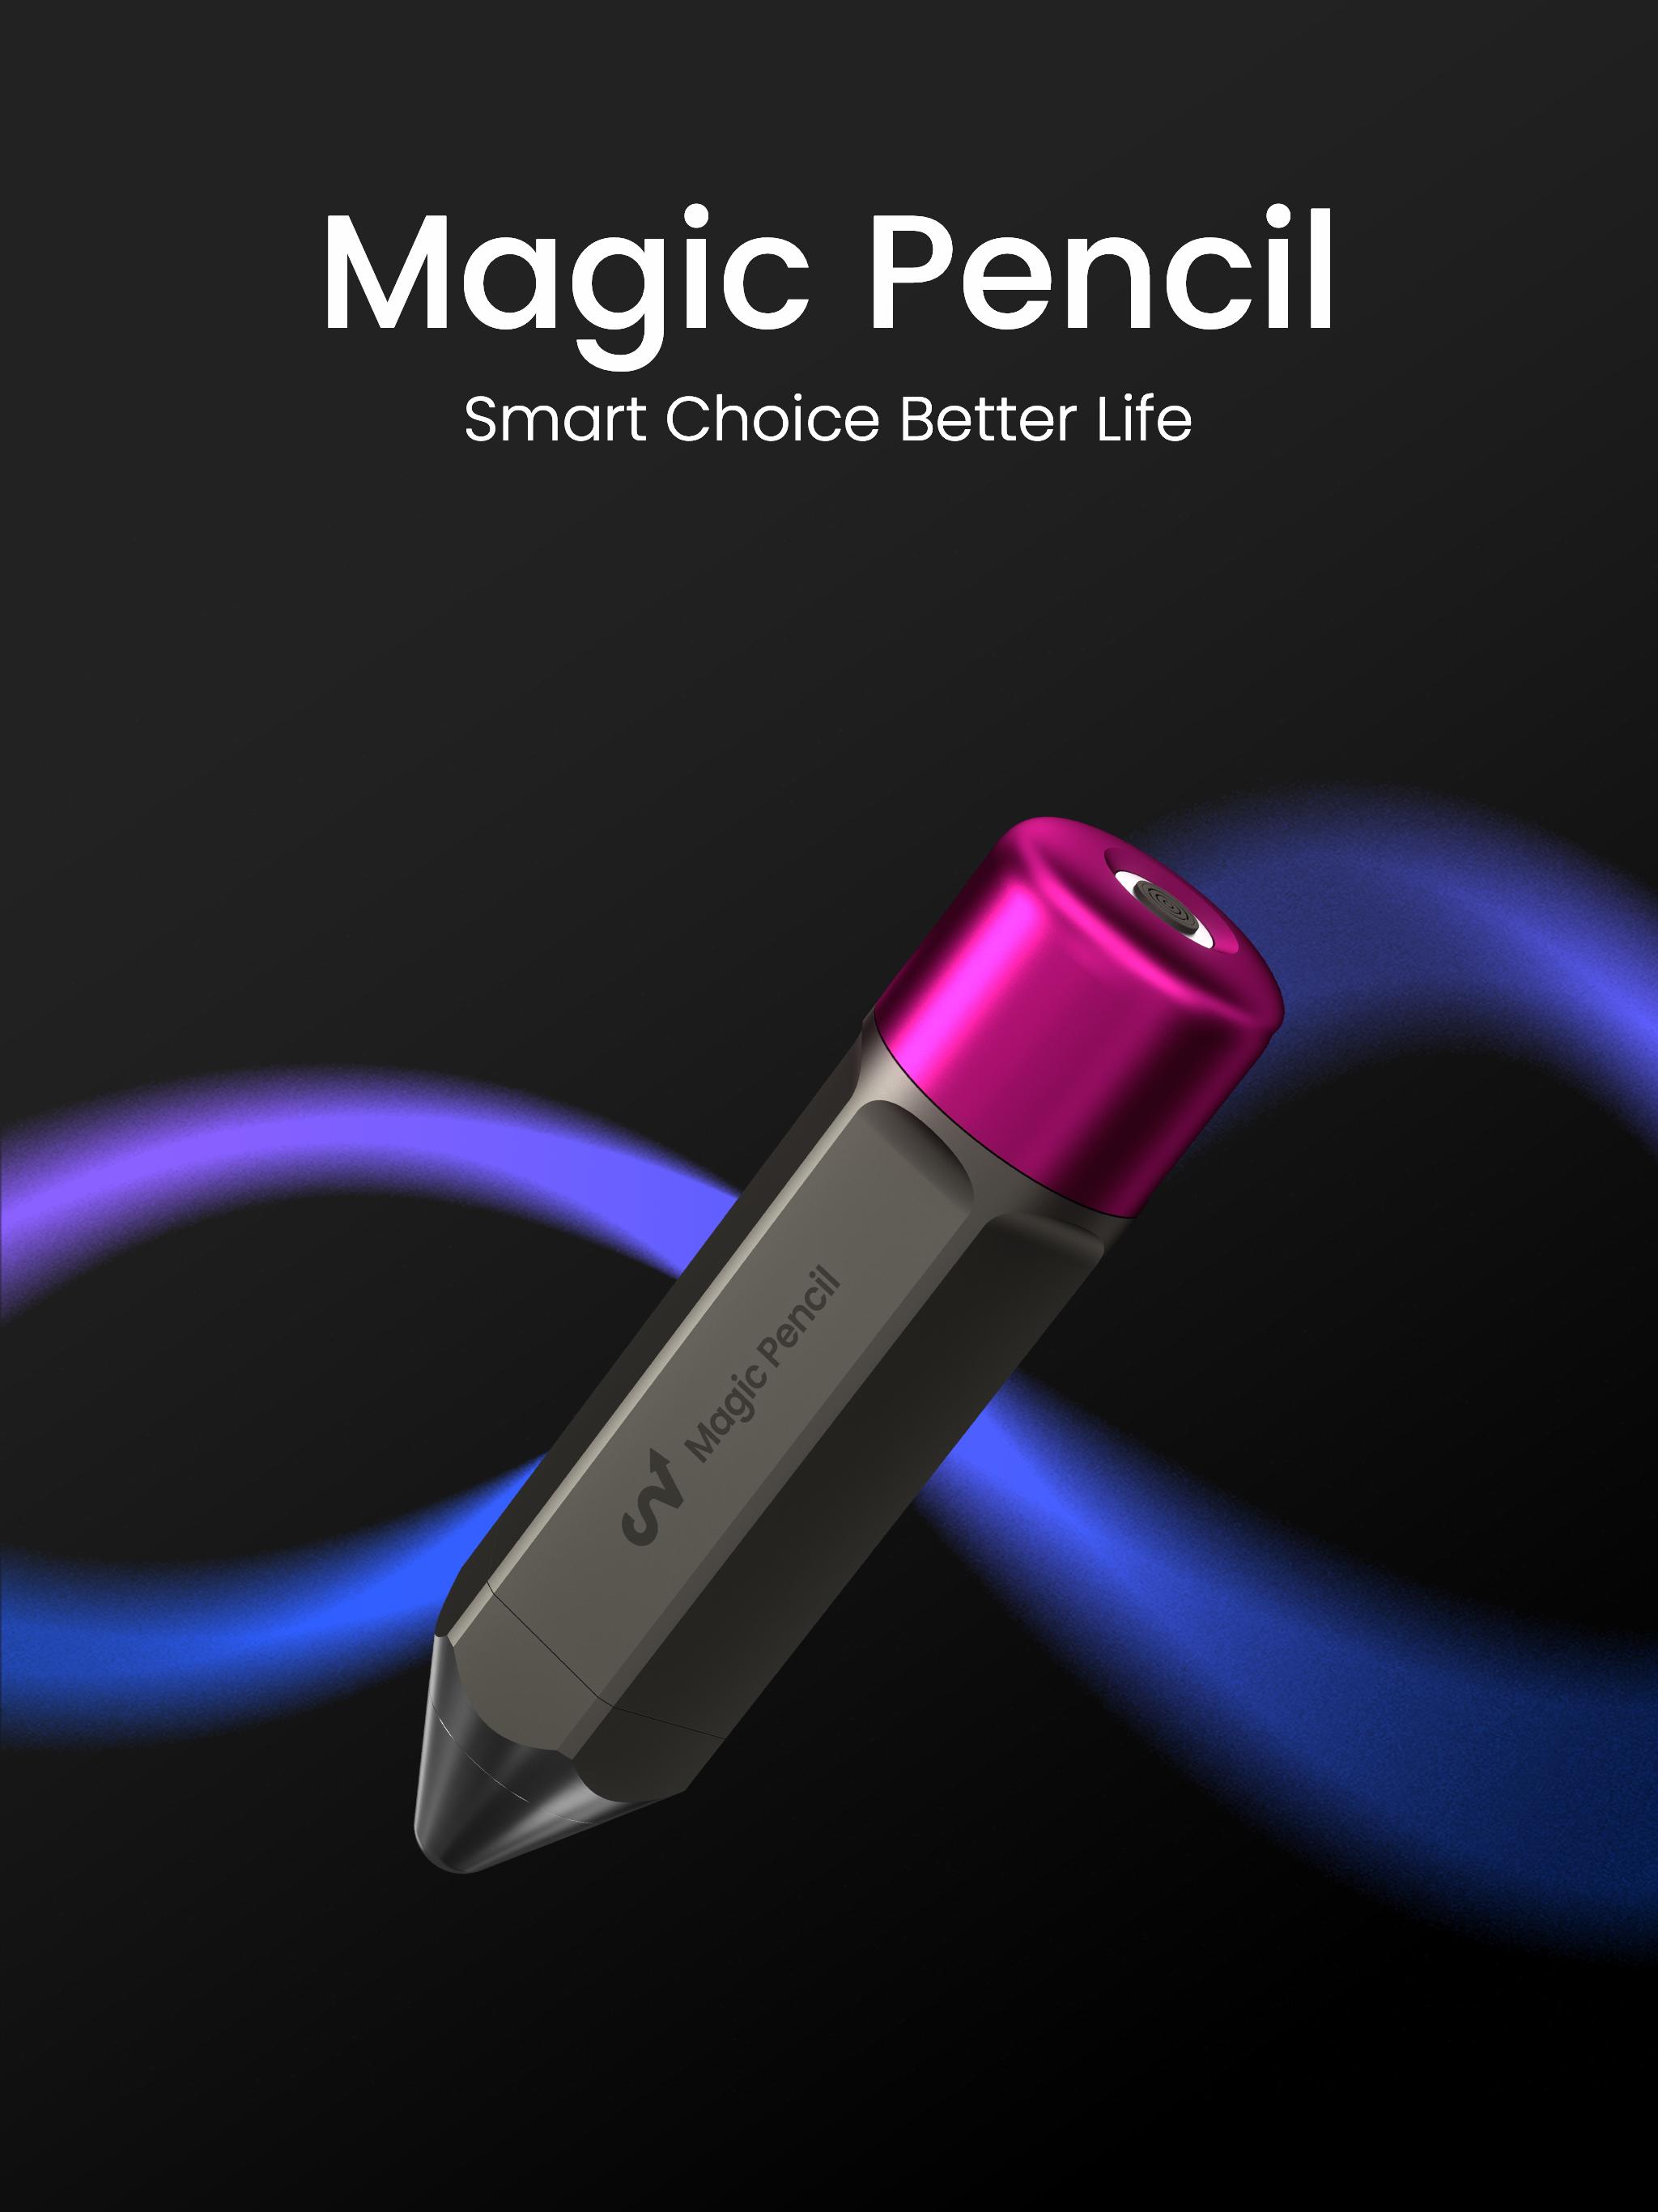 Magic pencil